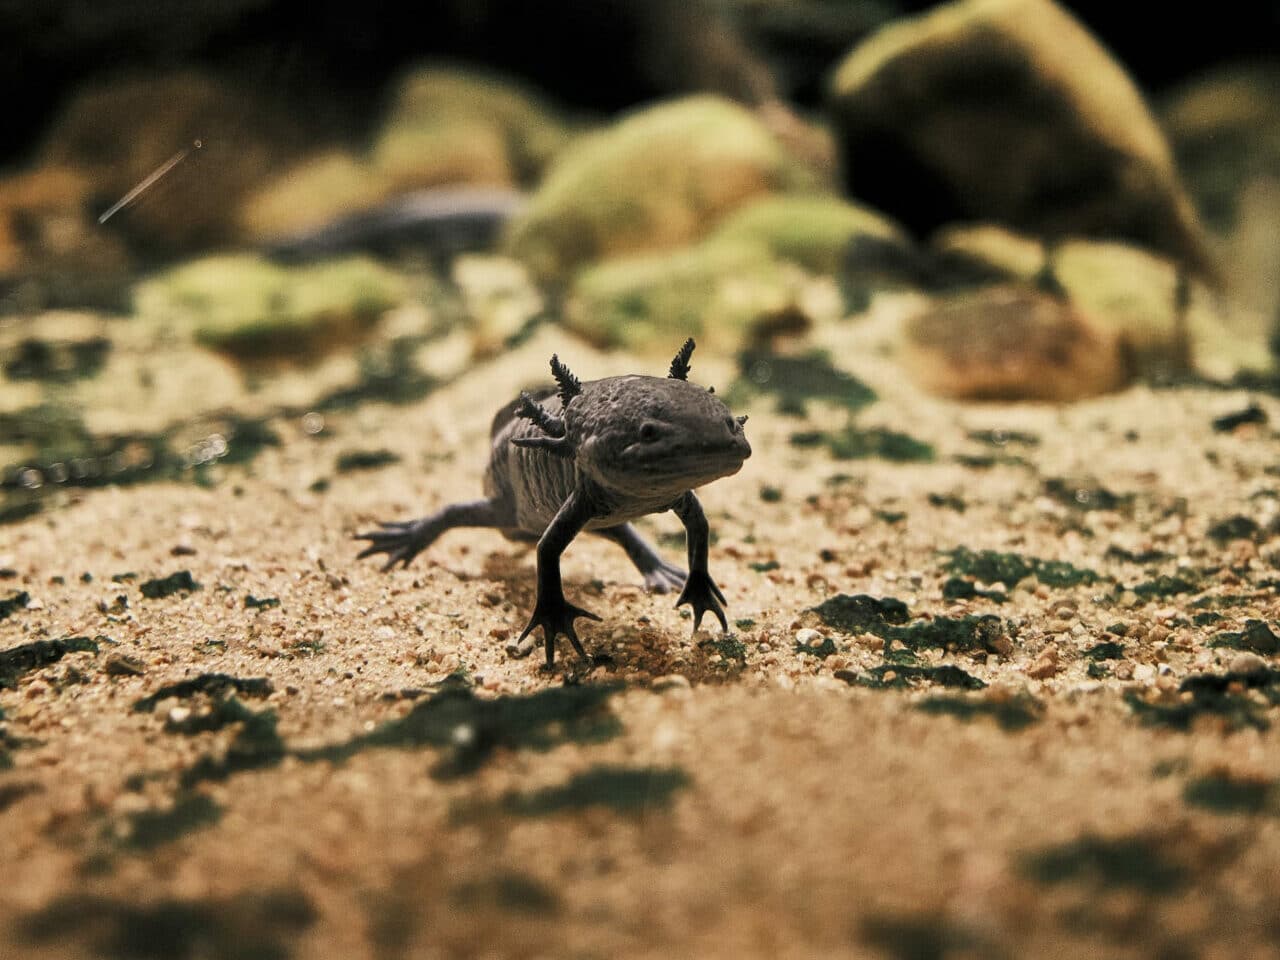 A small Axolotl